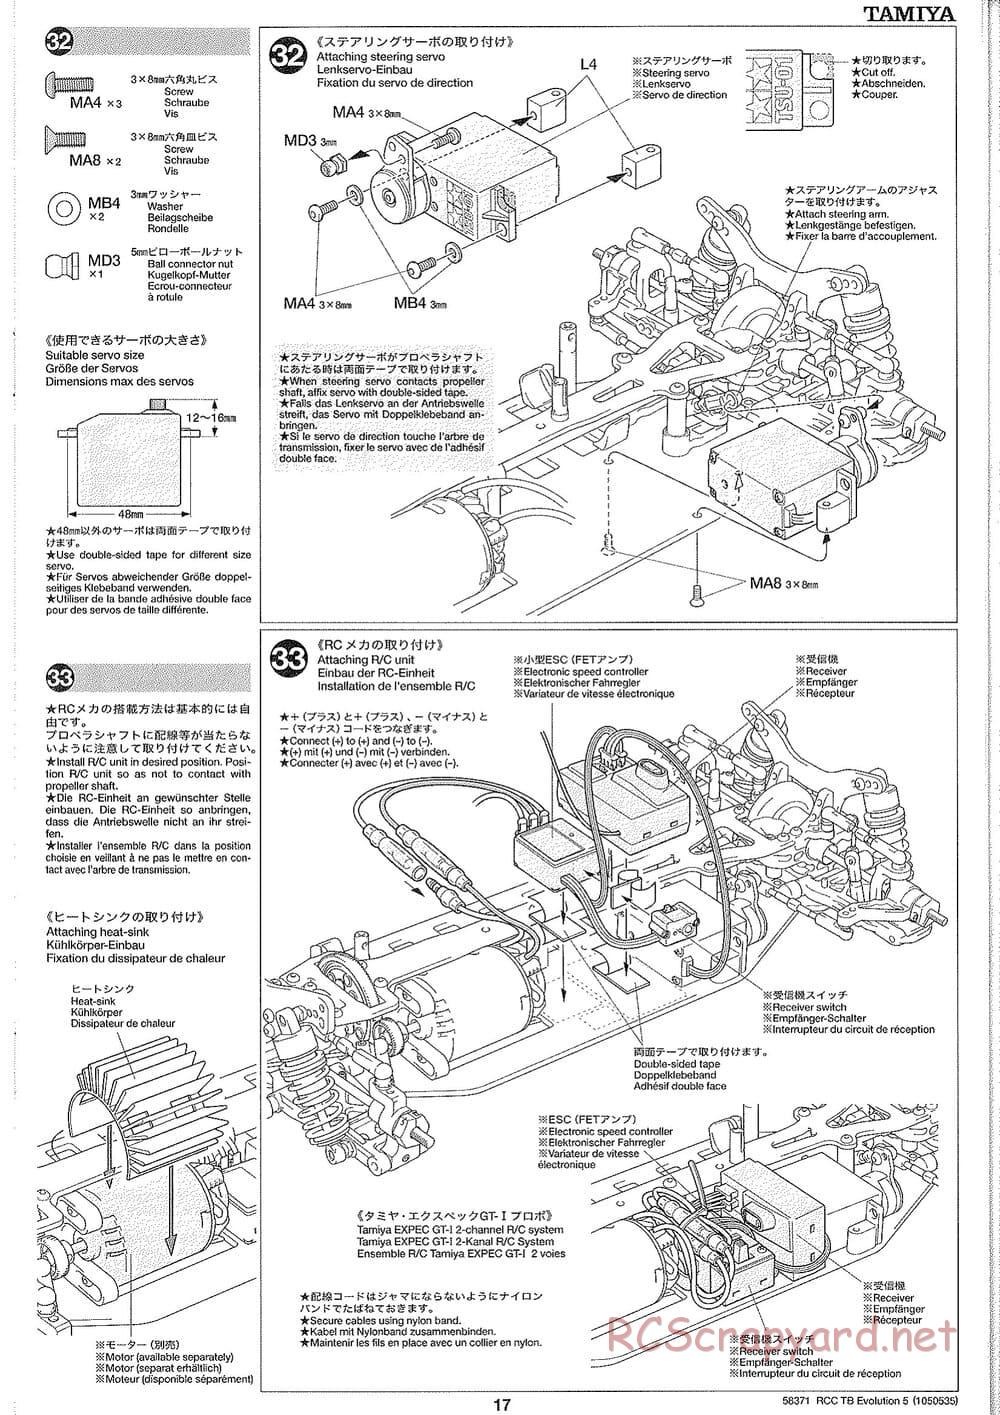 Tamiya - TB Evolution V Chassis - Manual - Page 17